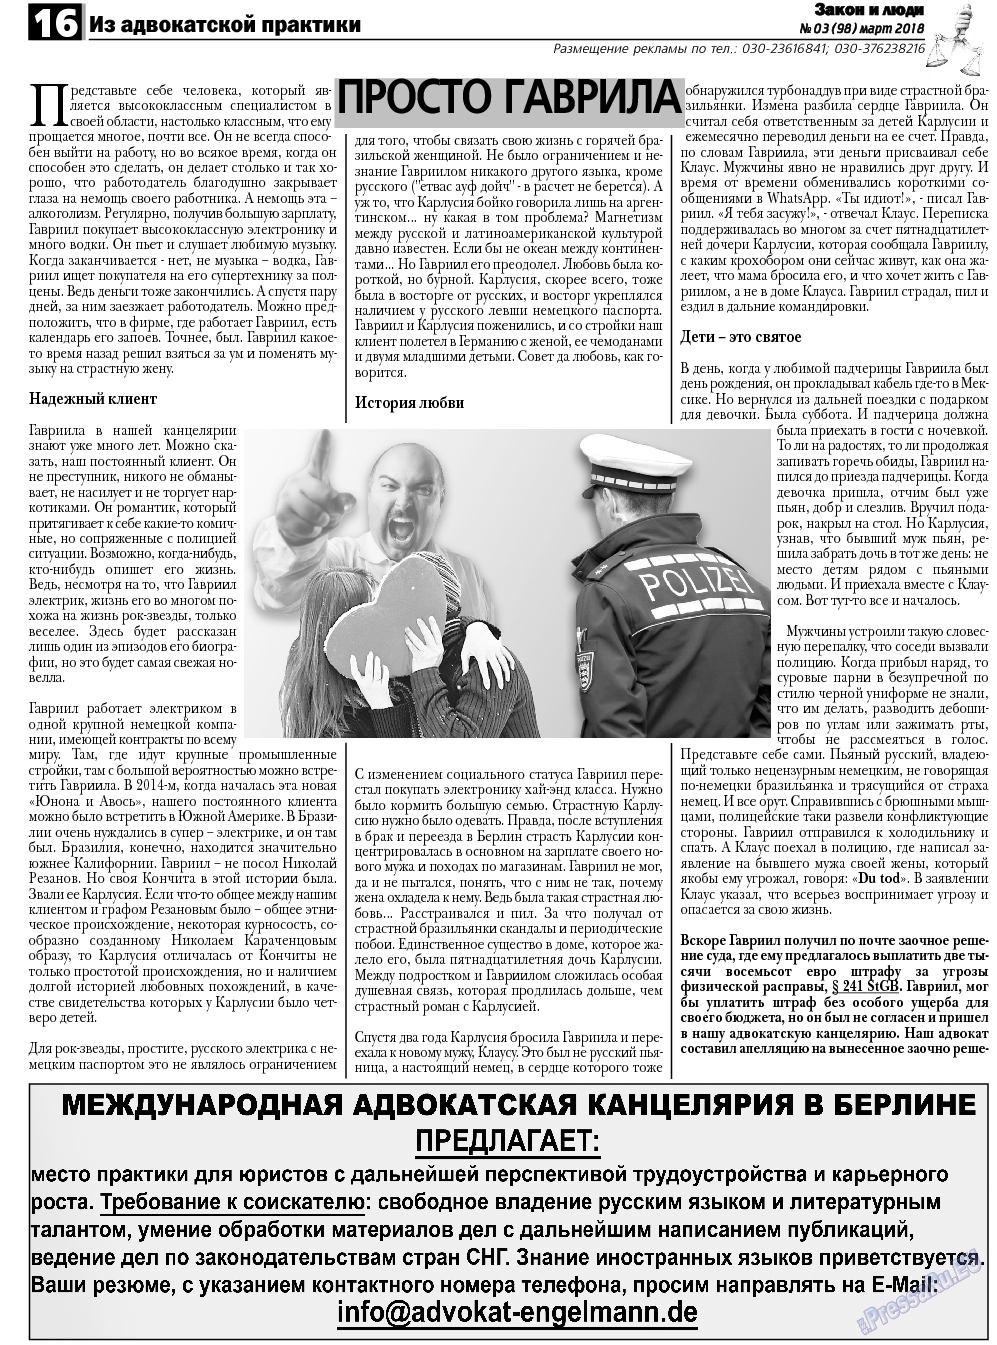 Закон и люди, газета. 2018 №3 стр.16